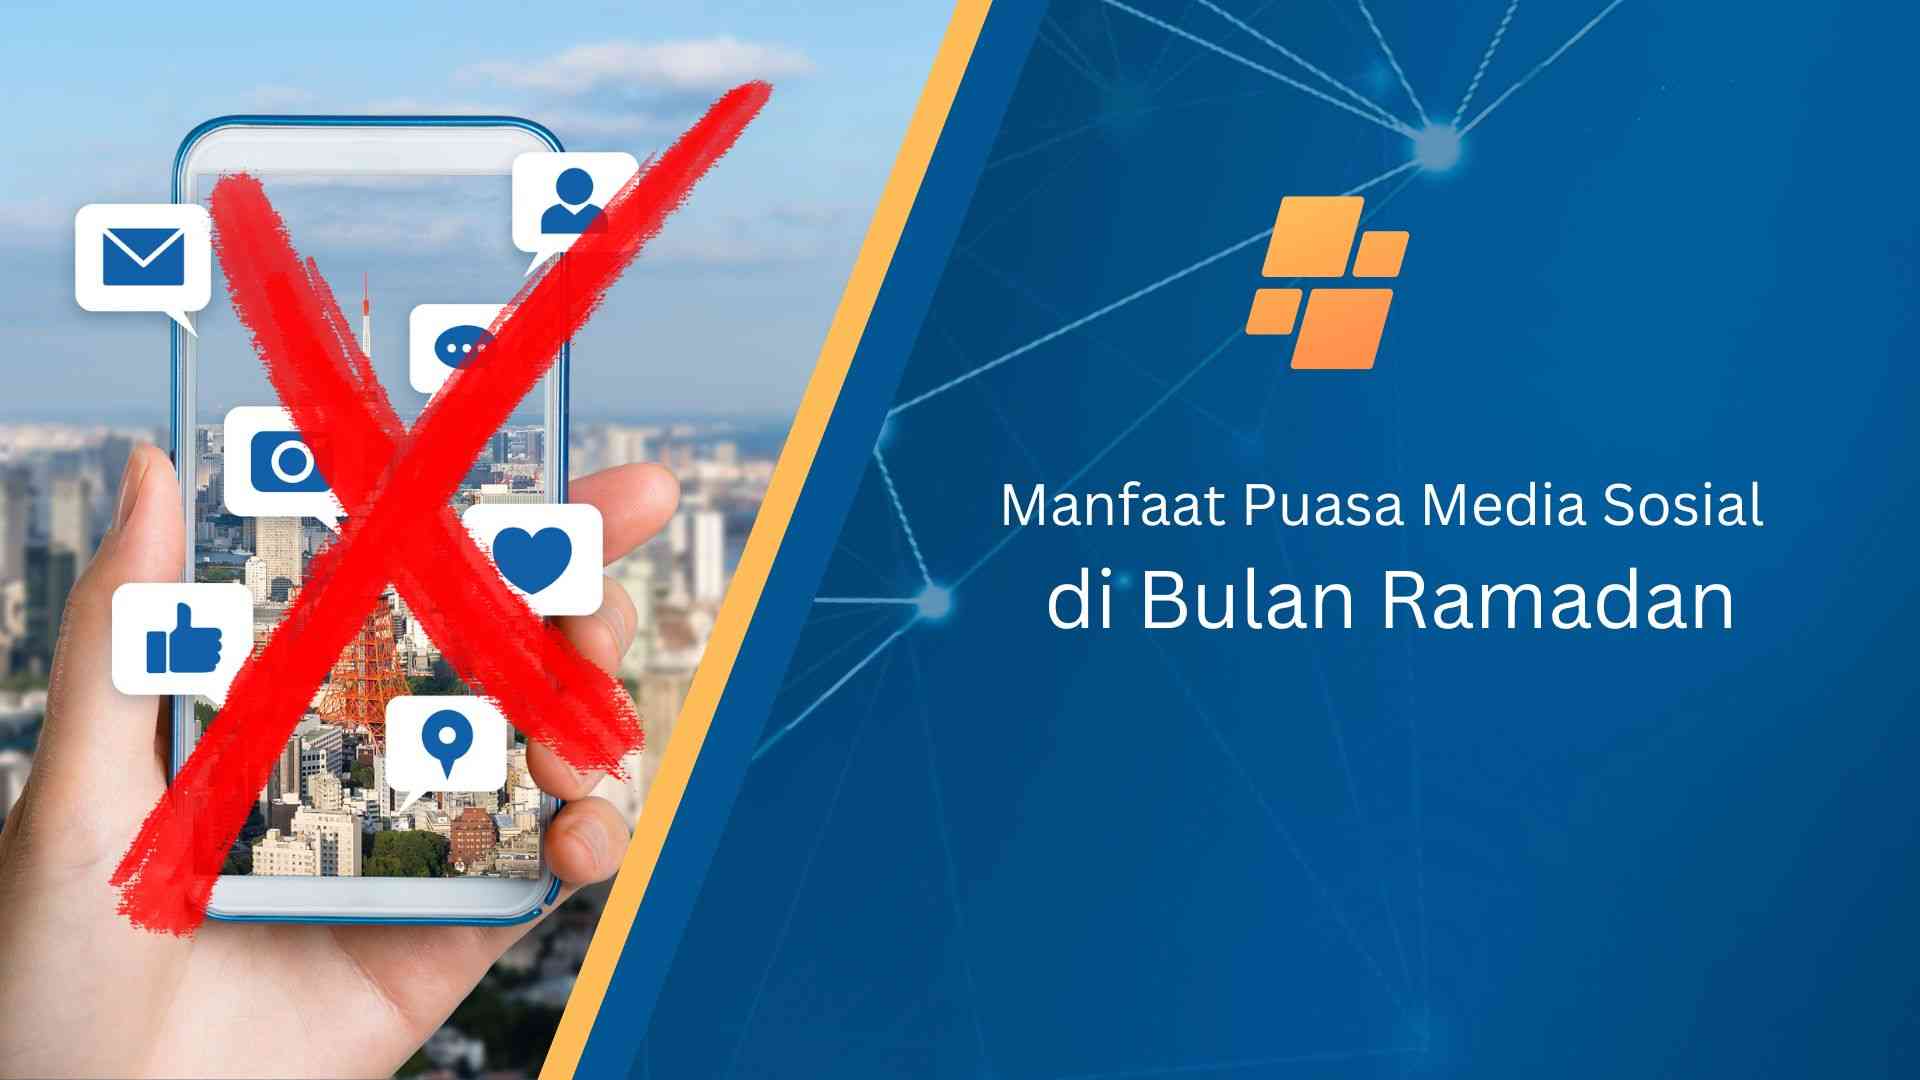 Manfaat Puasa Media Sosial di Bulan Ramadan